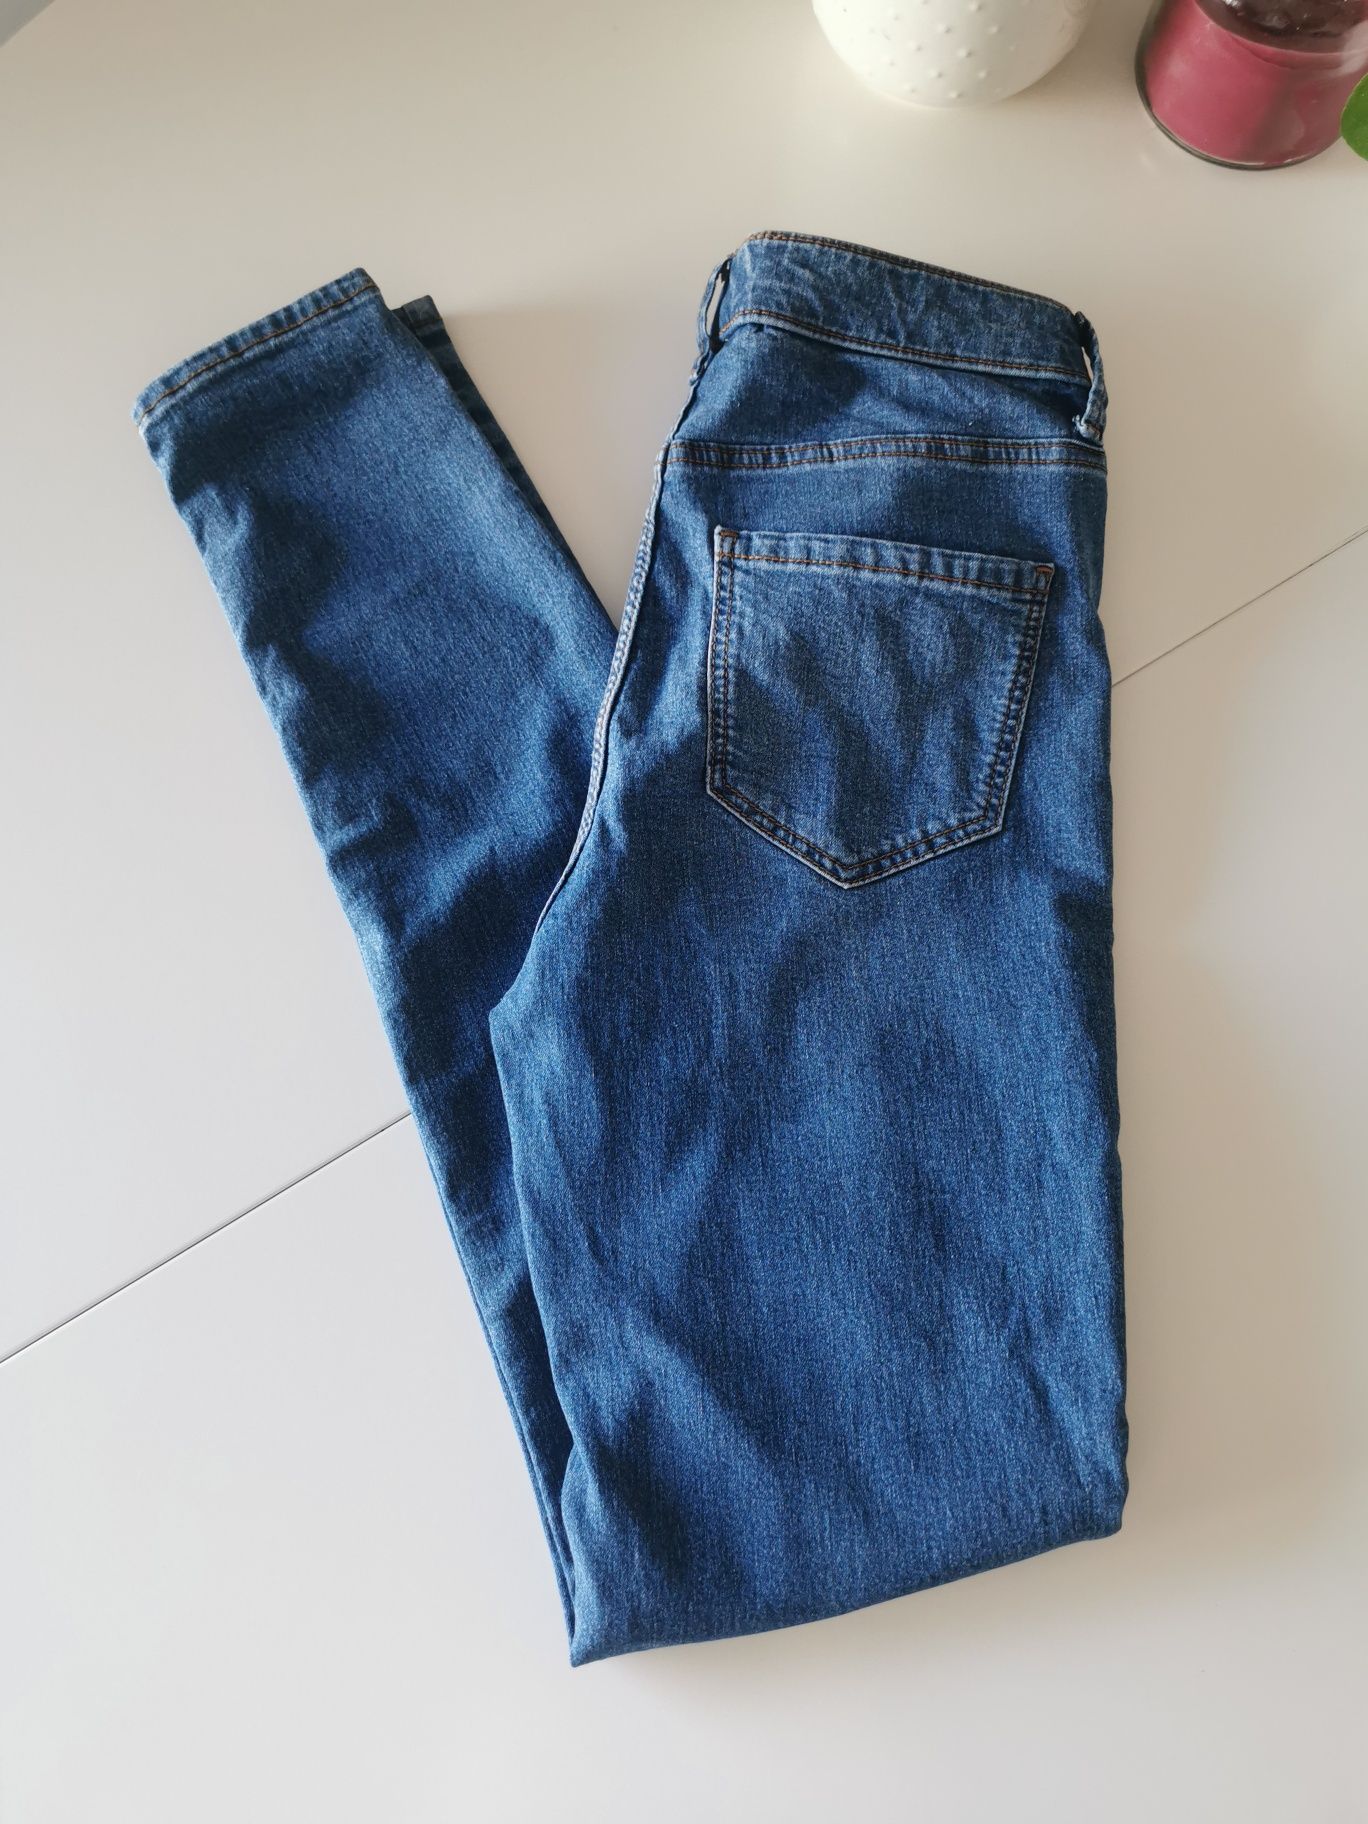 Spodnie jeans C&A rozmiar 34
Spodnie są elastyczne
Stan nowy bez metki